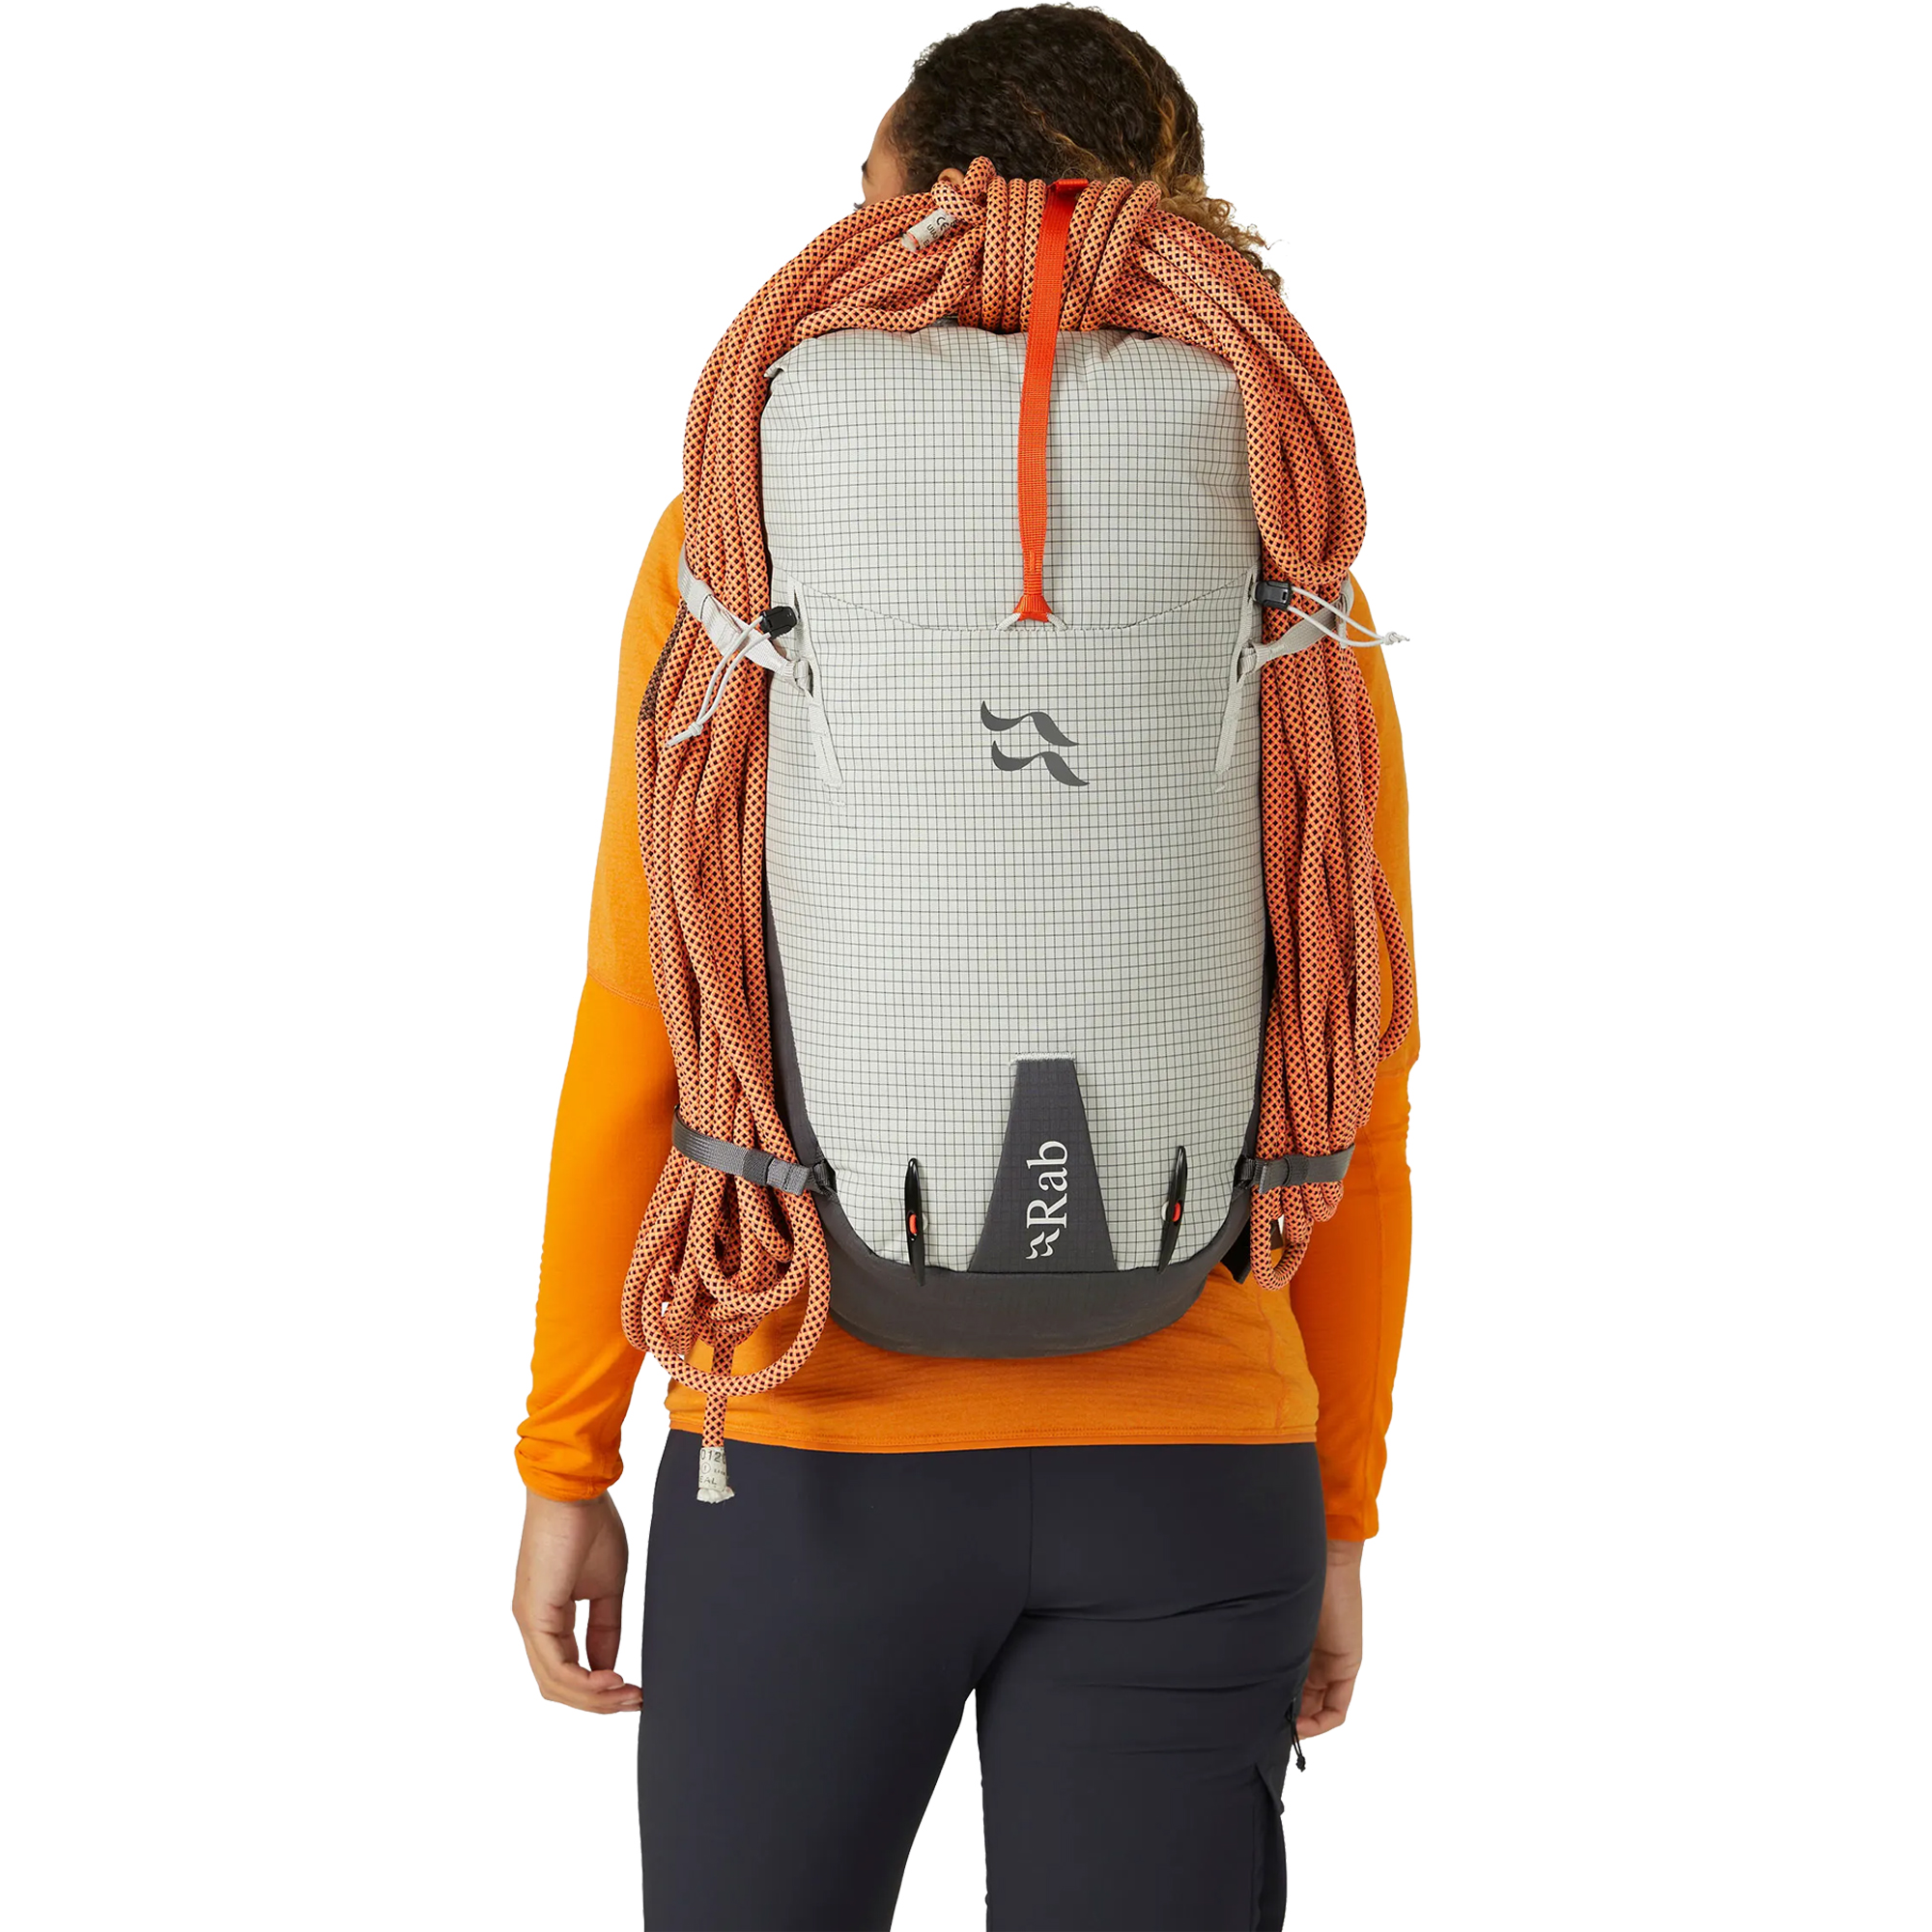 Rab Latok 28 Climbing/Mountaineering Backpack